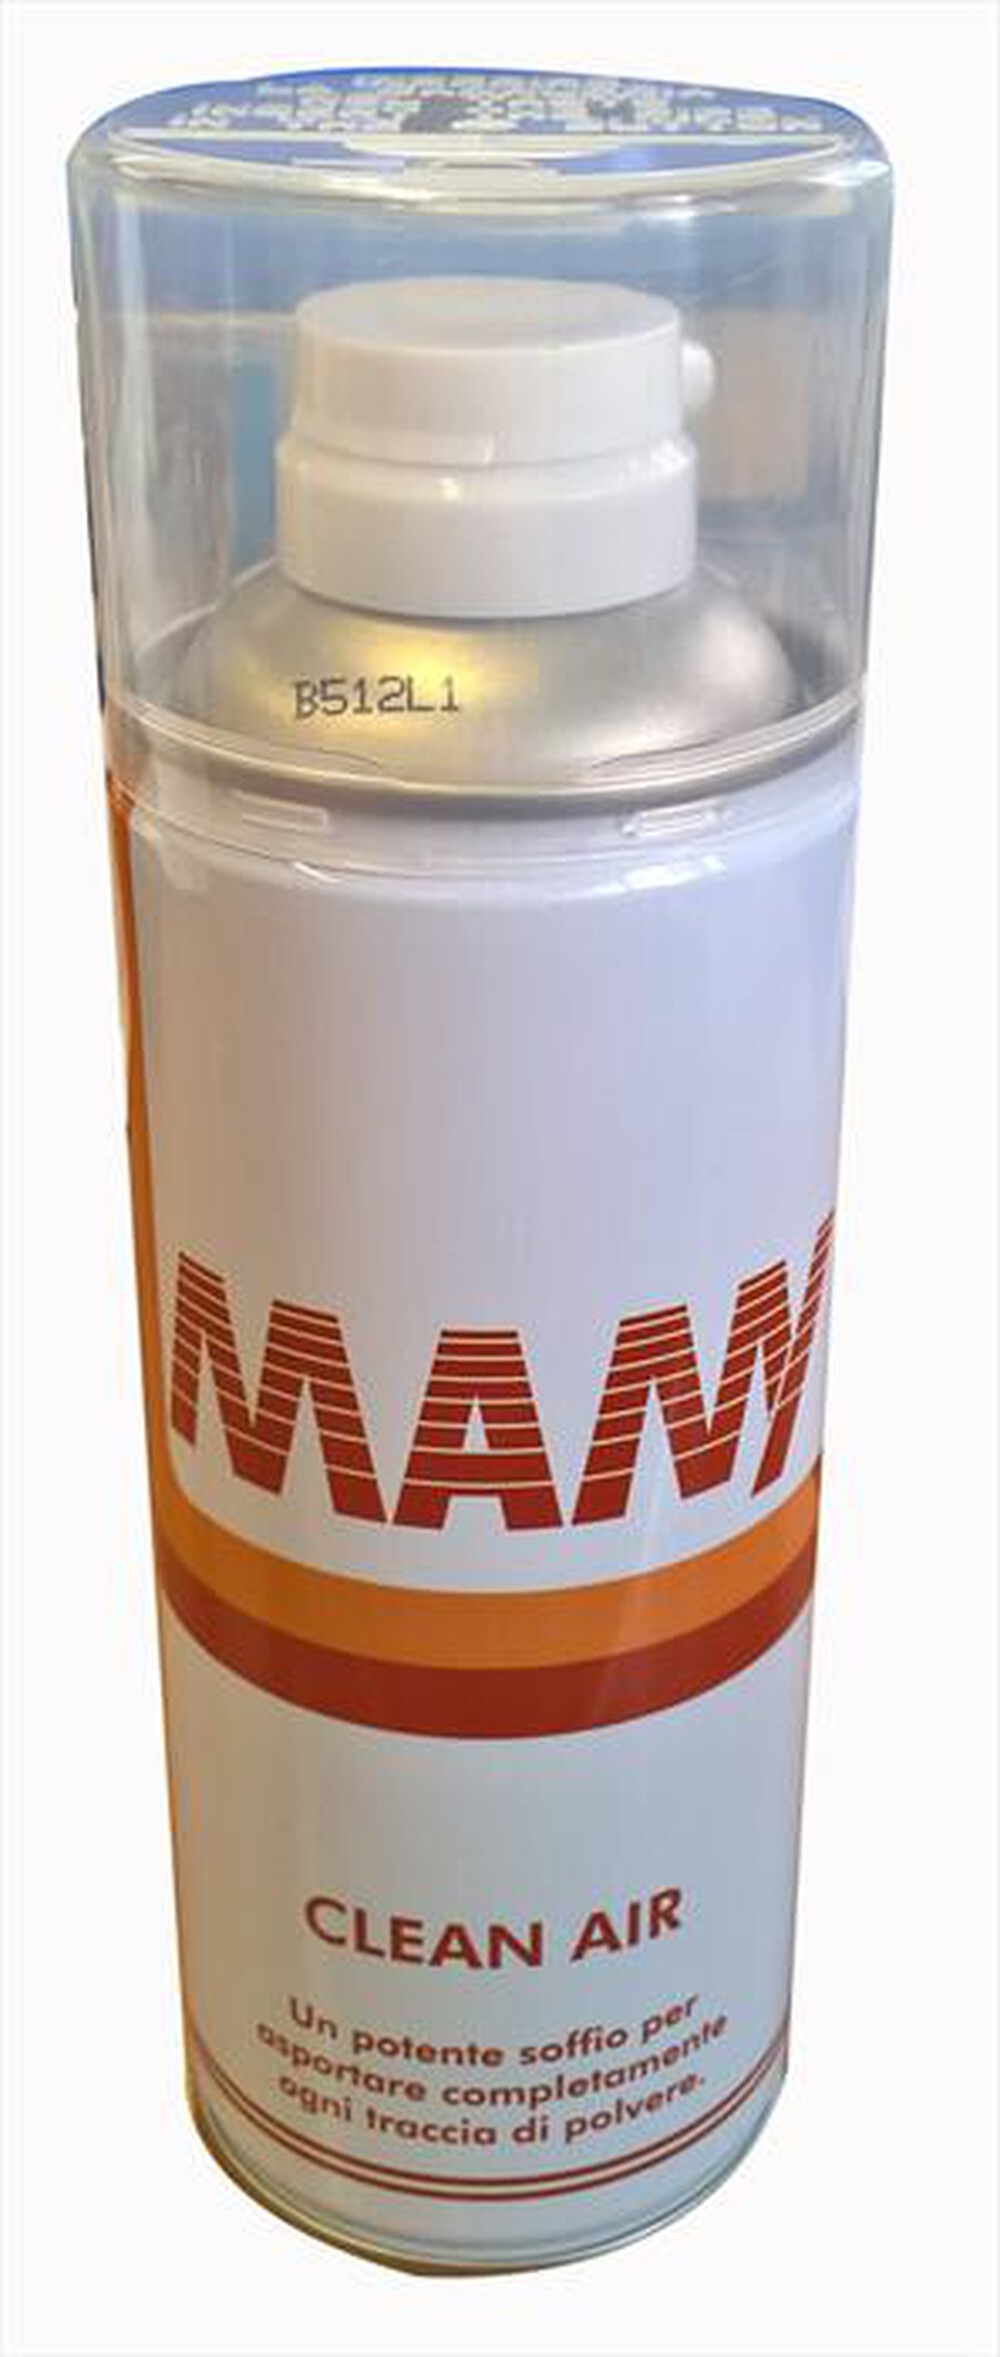 "HAMA - 5000016 Mamy - bomboletta aria compressa 400 ml - BIANCO/ROSSO"